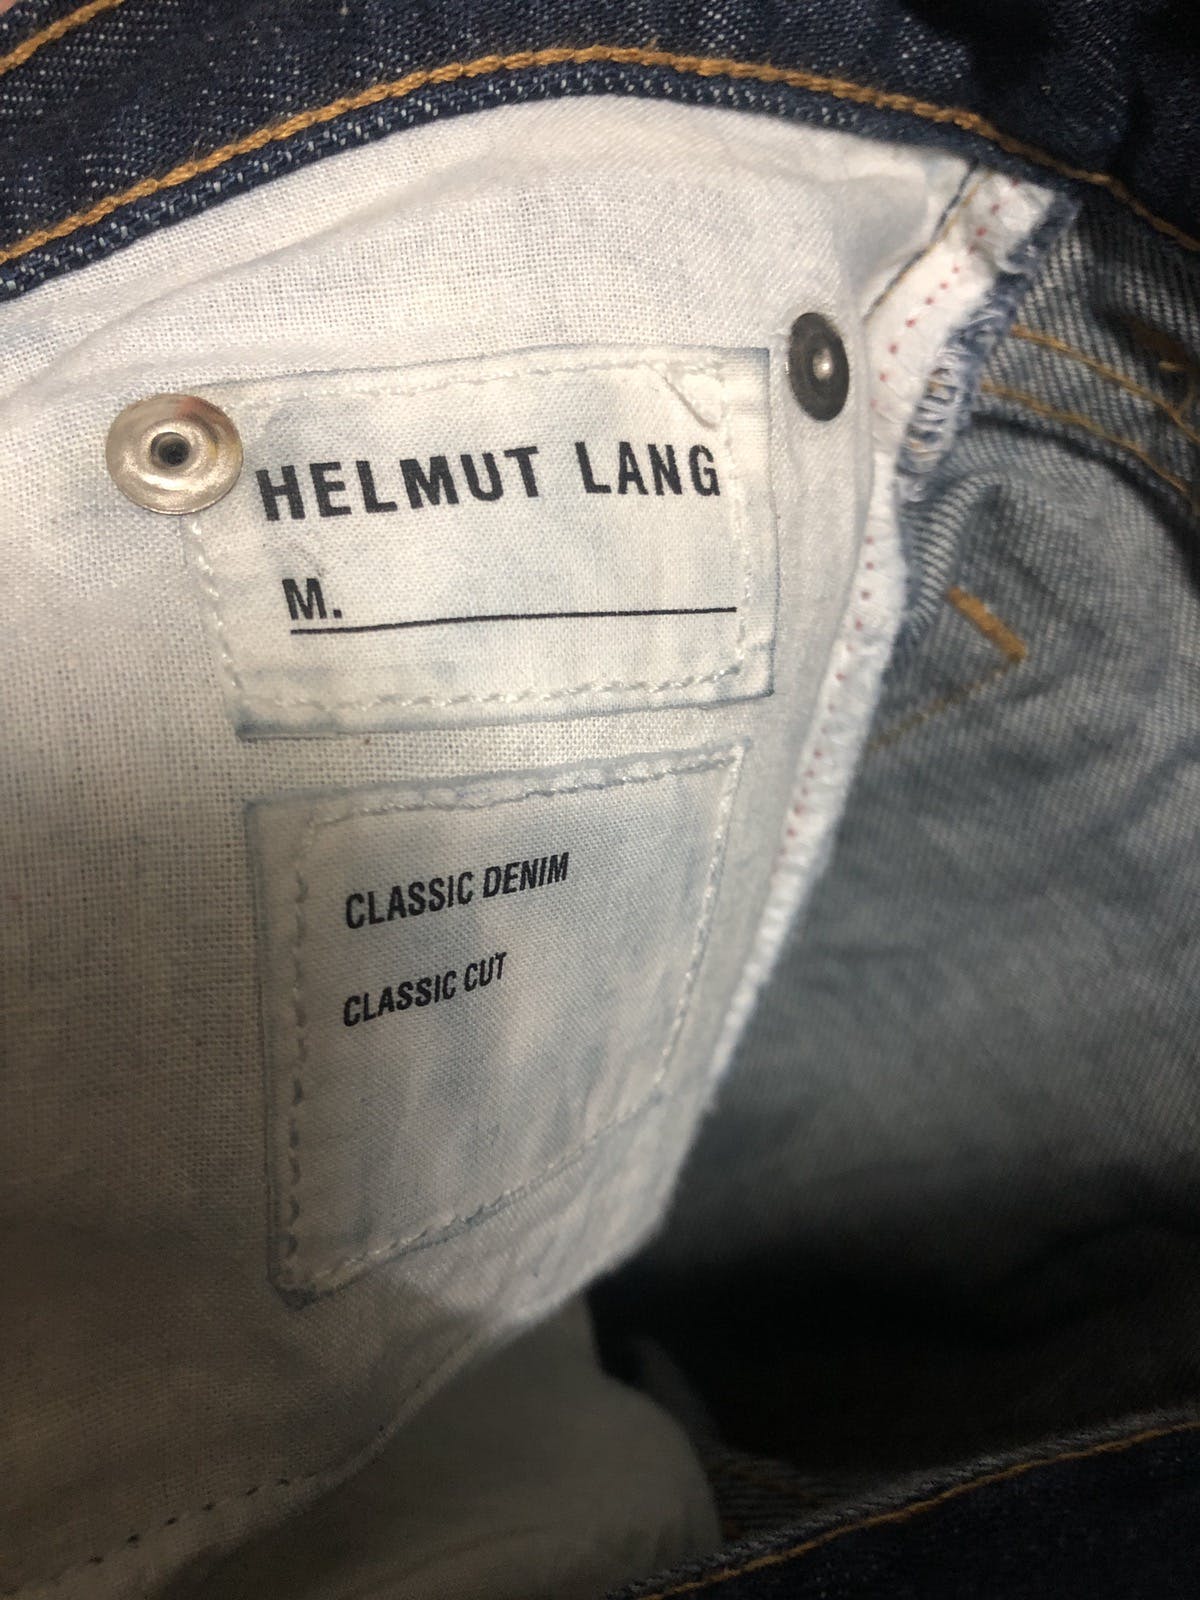 HELMUT LANG Classic Denim Jeans - 6